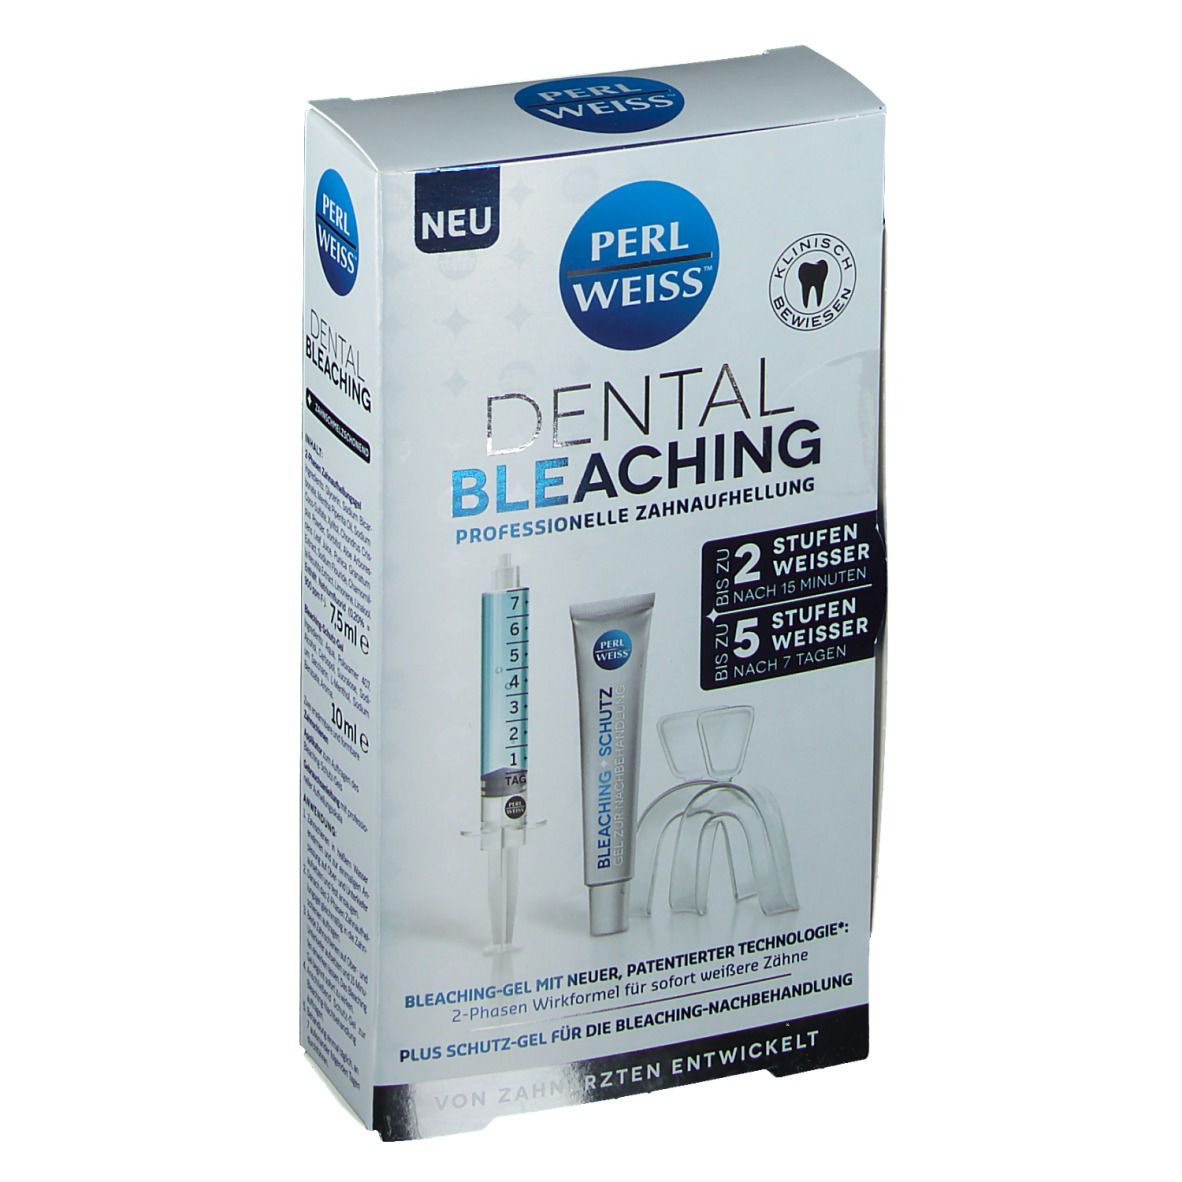 PERLWEISS® Dental Bleaching